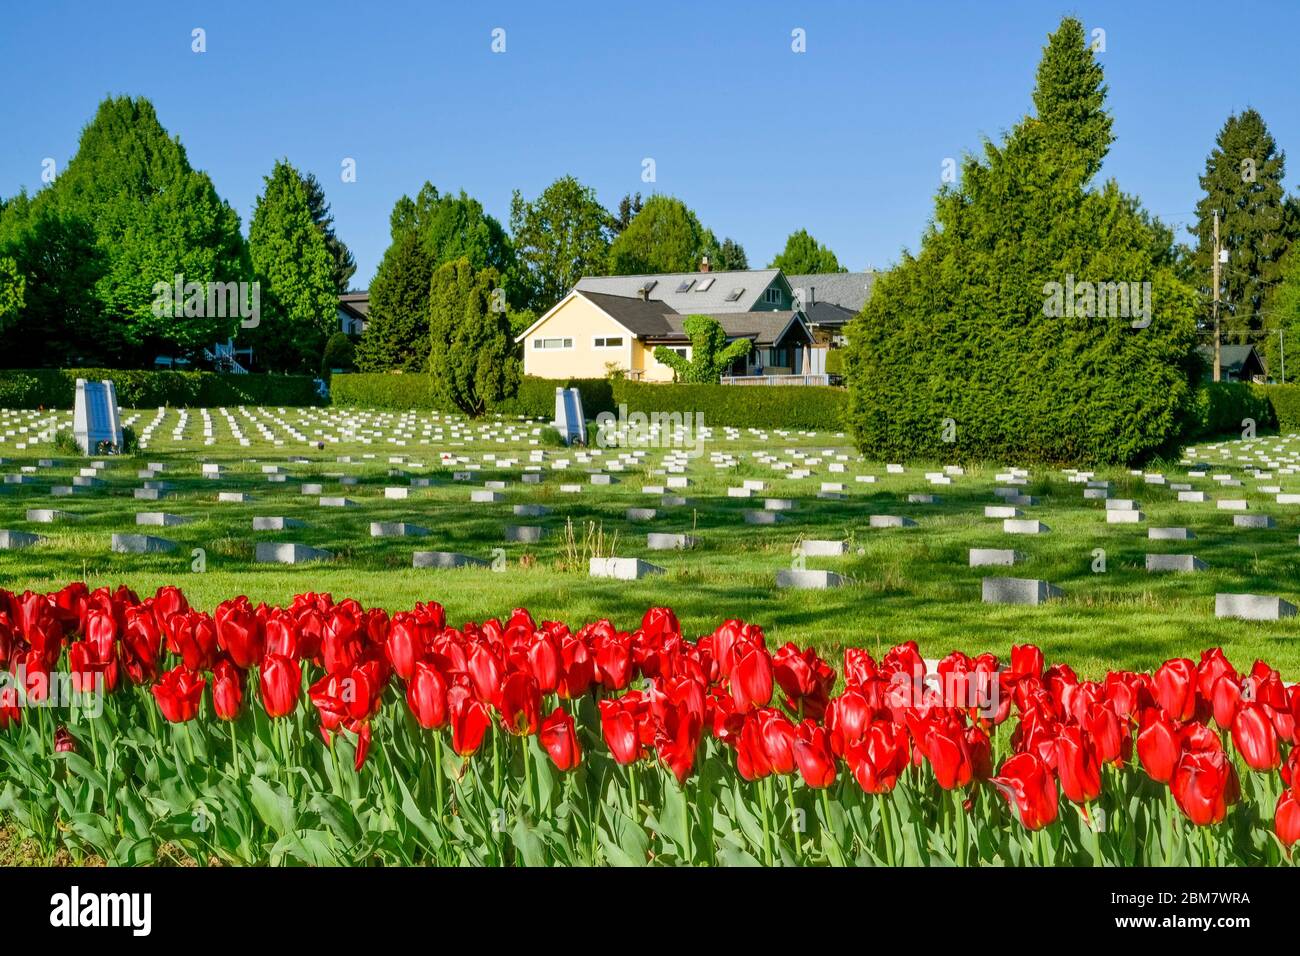 Tulipani rossi, commemorando il 75° anniversario della liberazione dei Paesi Bassi, Mountain View Cemetery, Vancouver, British Columbia, Canada Foto Stock